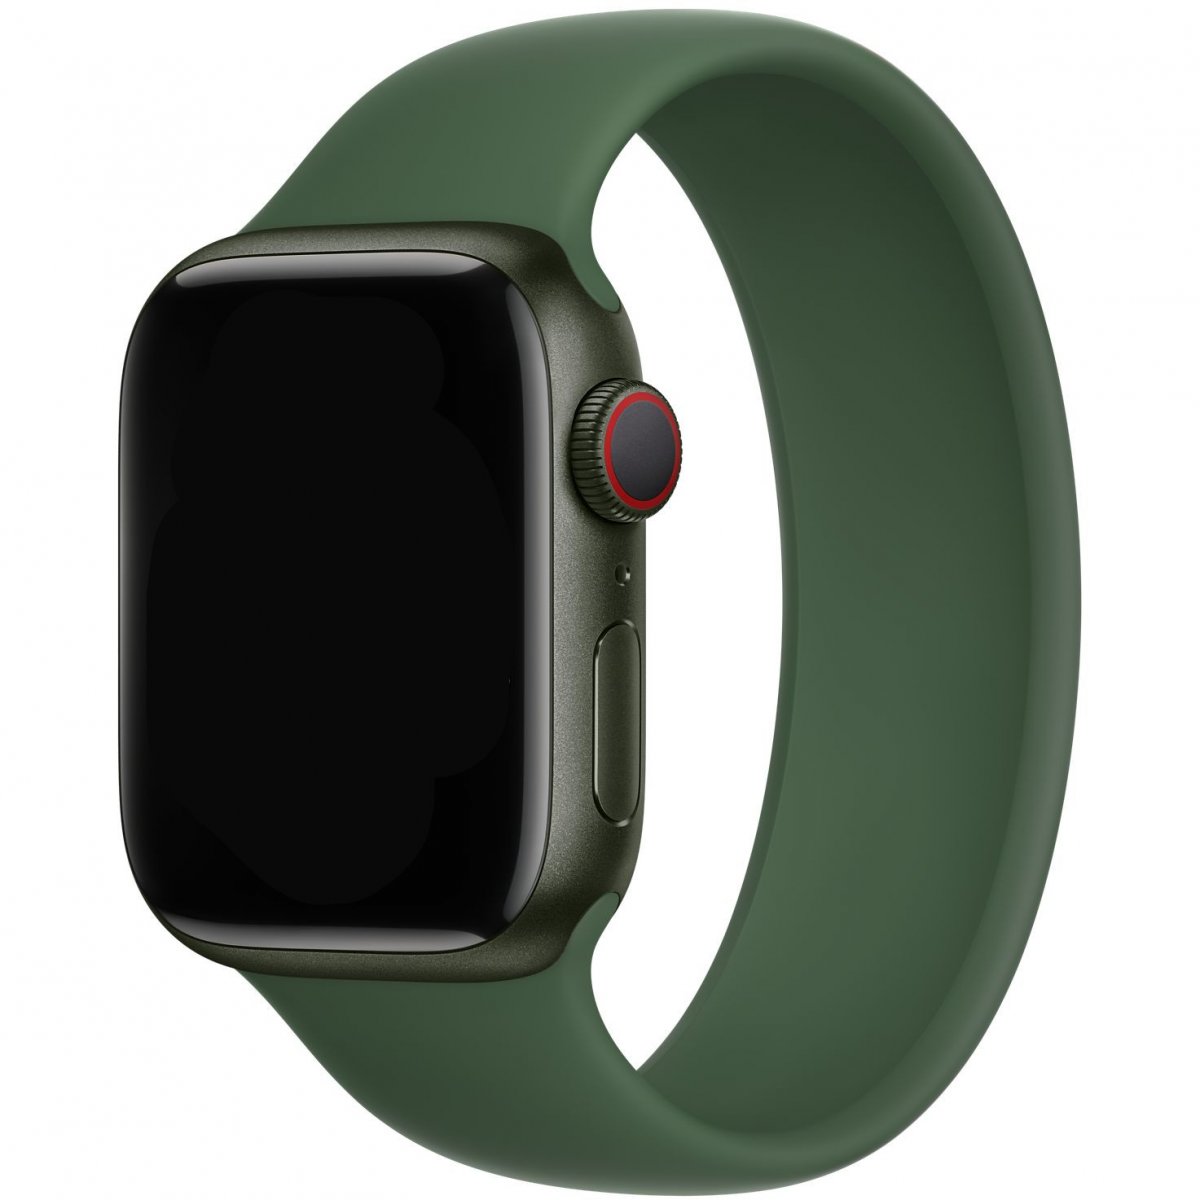 Řemínek iMore Solo Loop Apple Watch Series 1/2/3 38mm - Jetelově zelená (M)